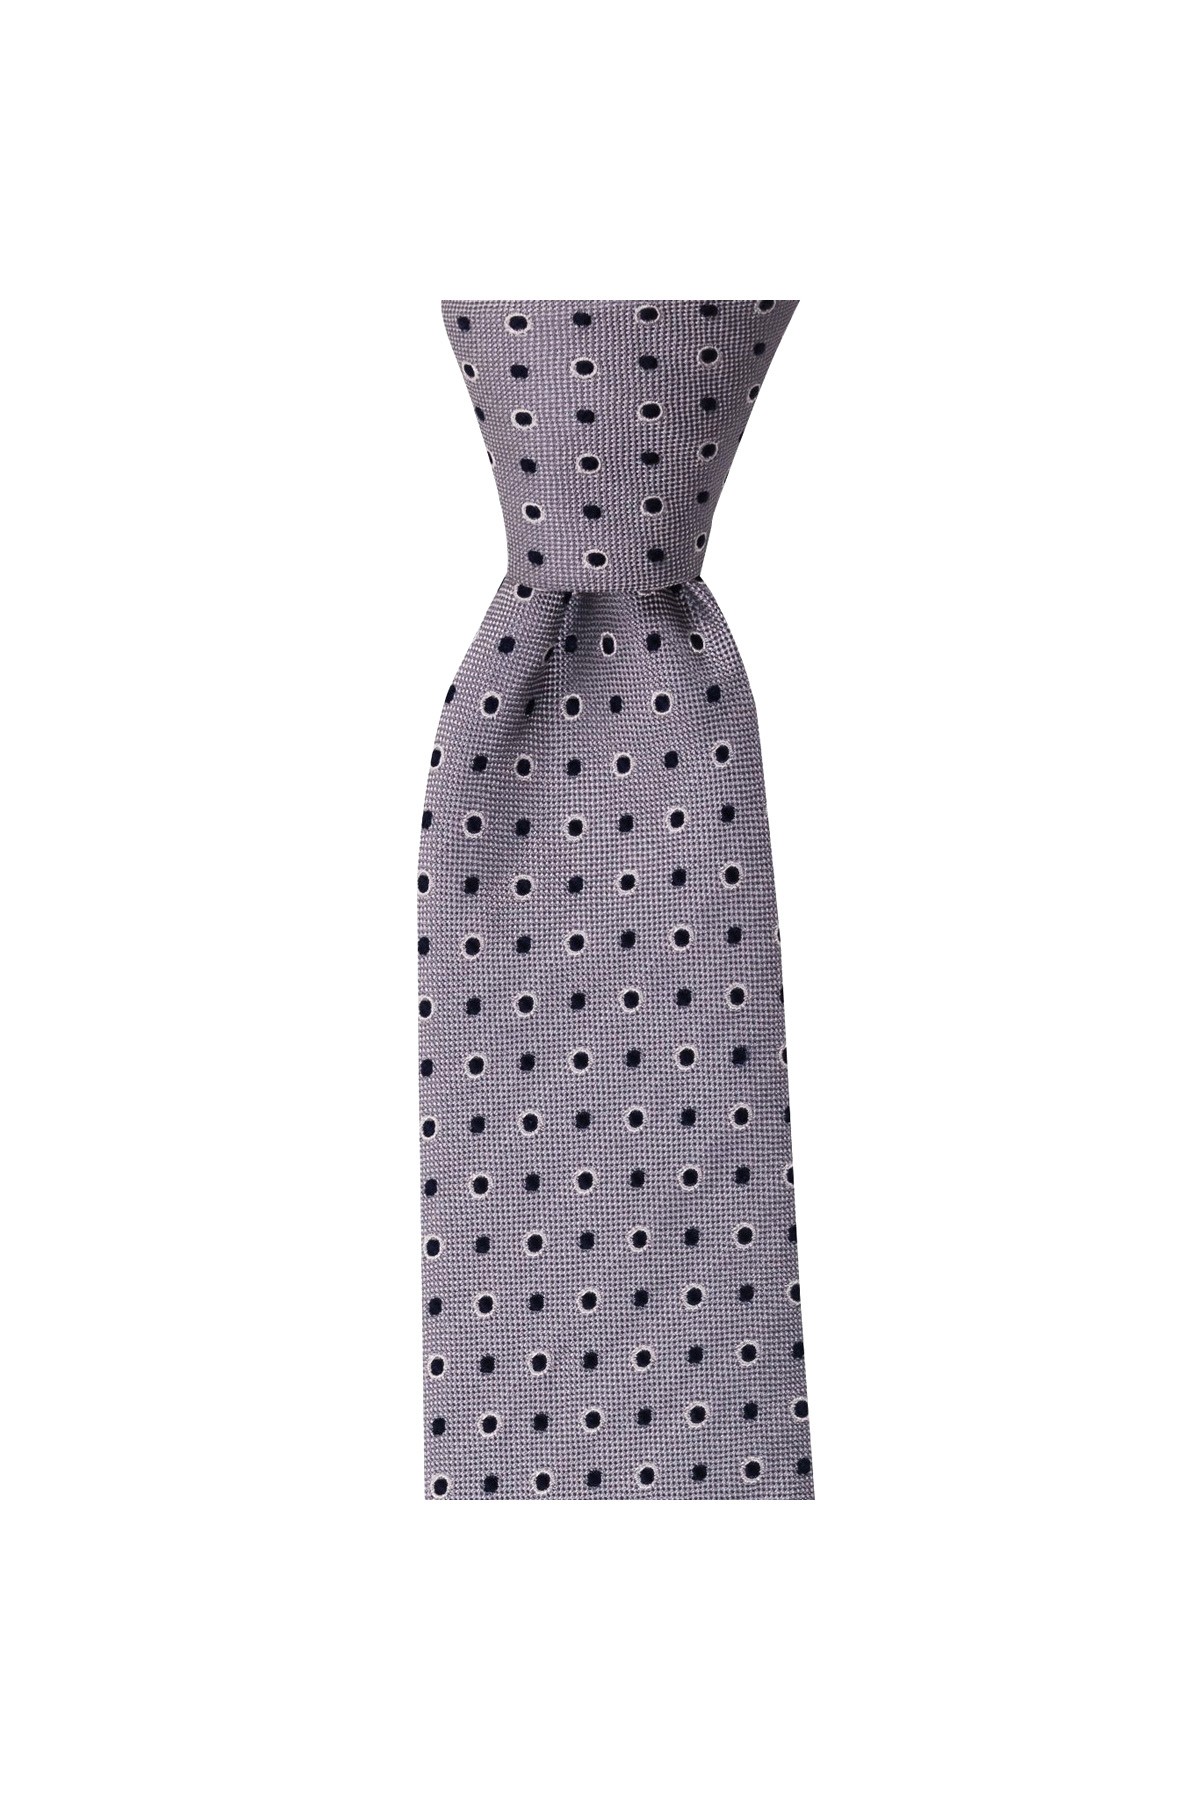 Klasik desenli 7,5 cm genişliğinde ipek kravat - Açık gri